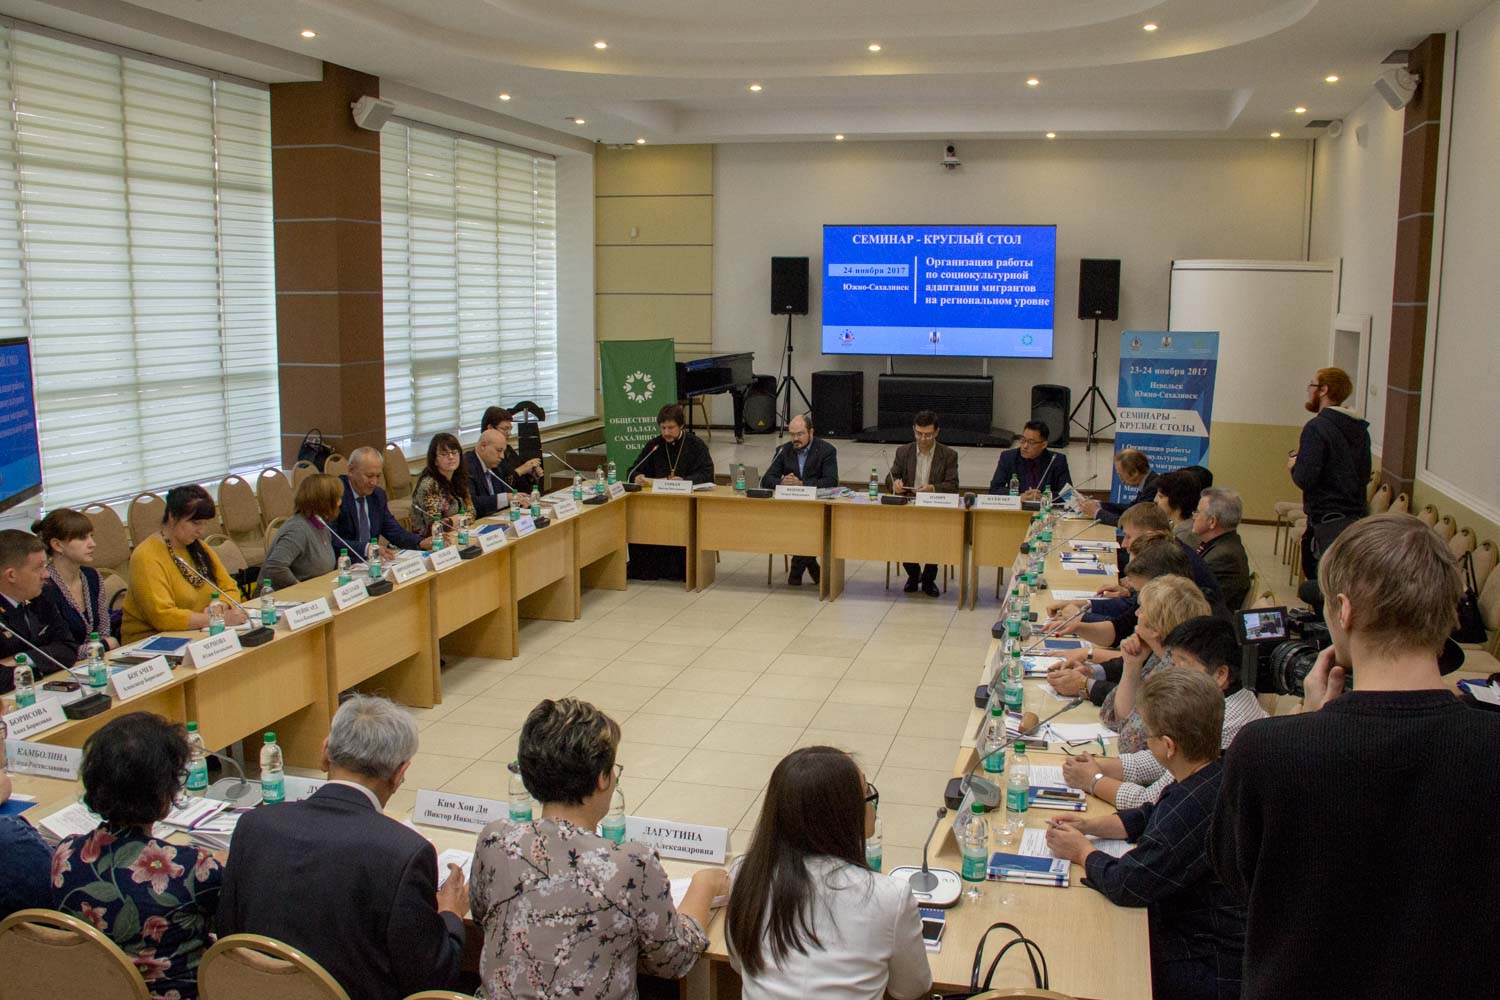  «ПСП-фонд» провел на Сахалине круглый стол «Организация работы по социокультурной адаптации мигрантов на региональном уровне»